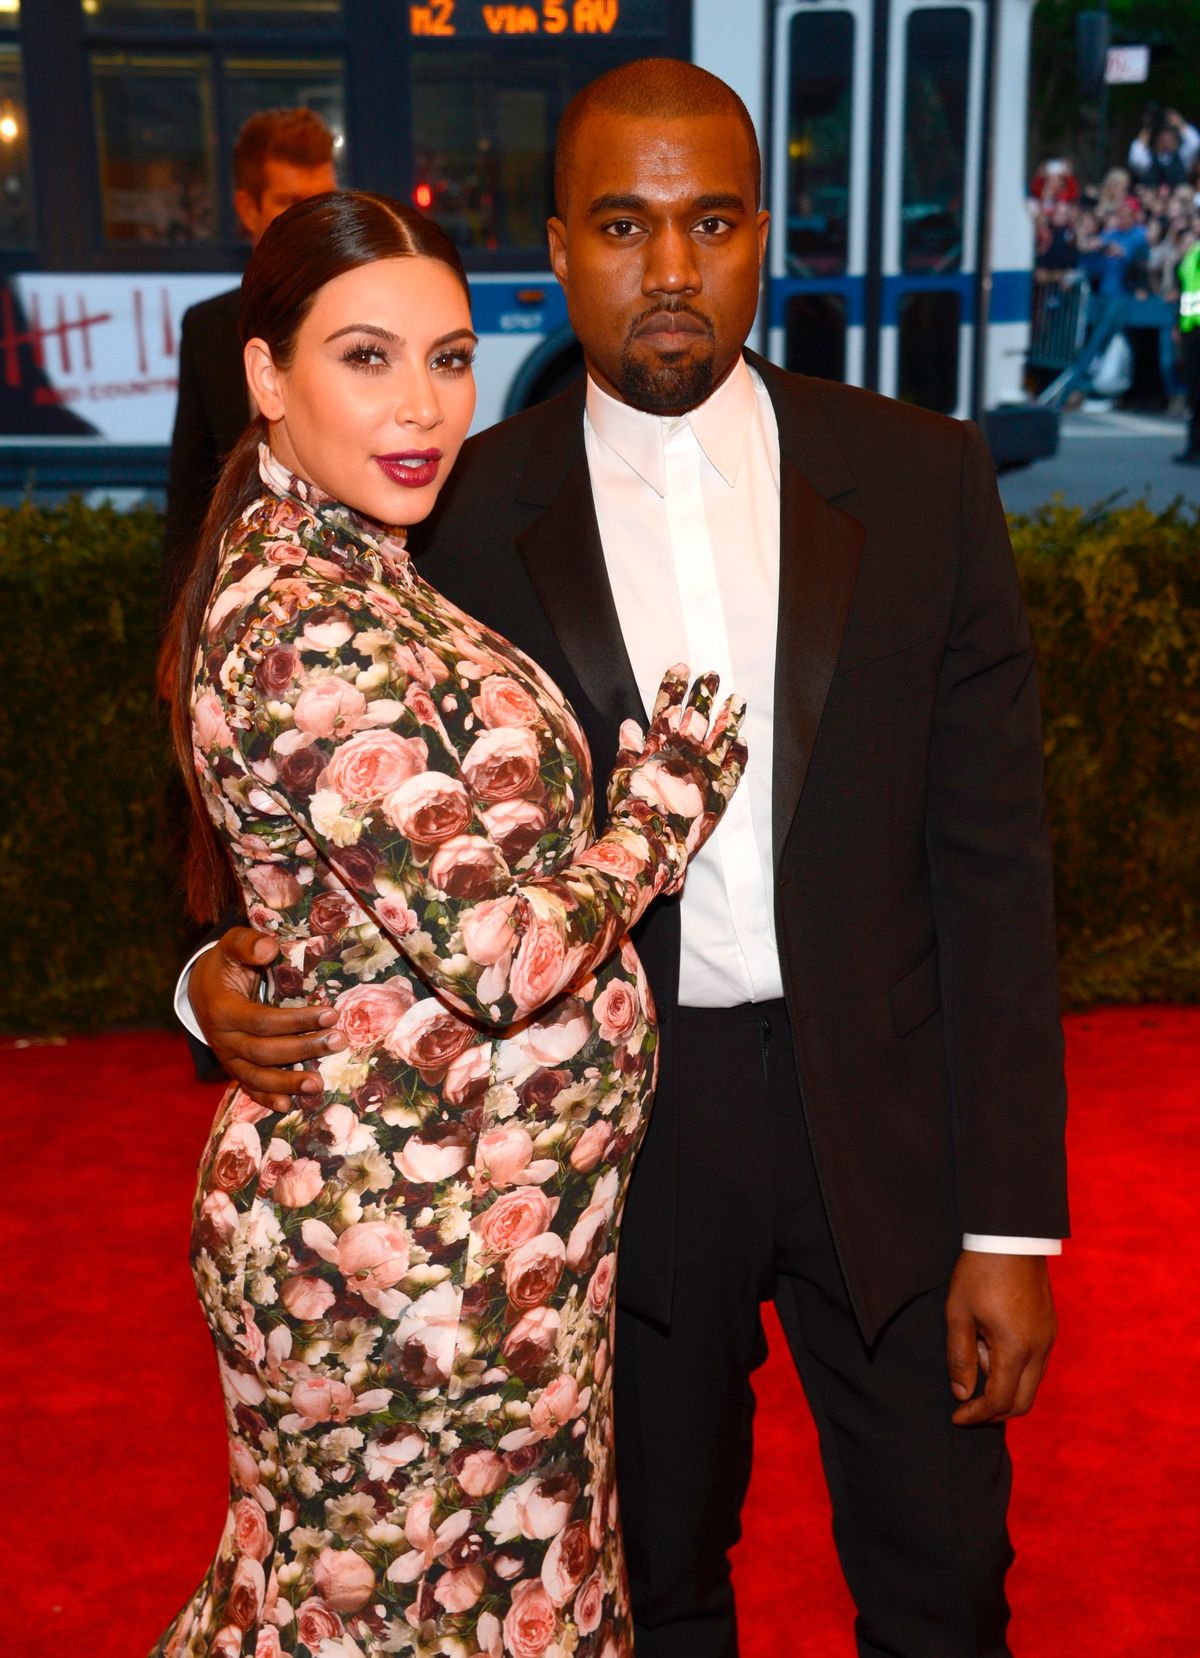 Η Kim Kardashian λέει ότι η εγκυμοσύνη επηρέασε σημαντικά την αυτοεκτίμησή της